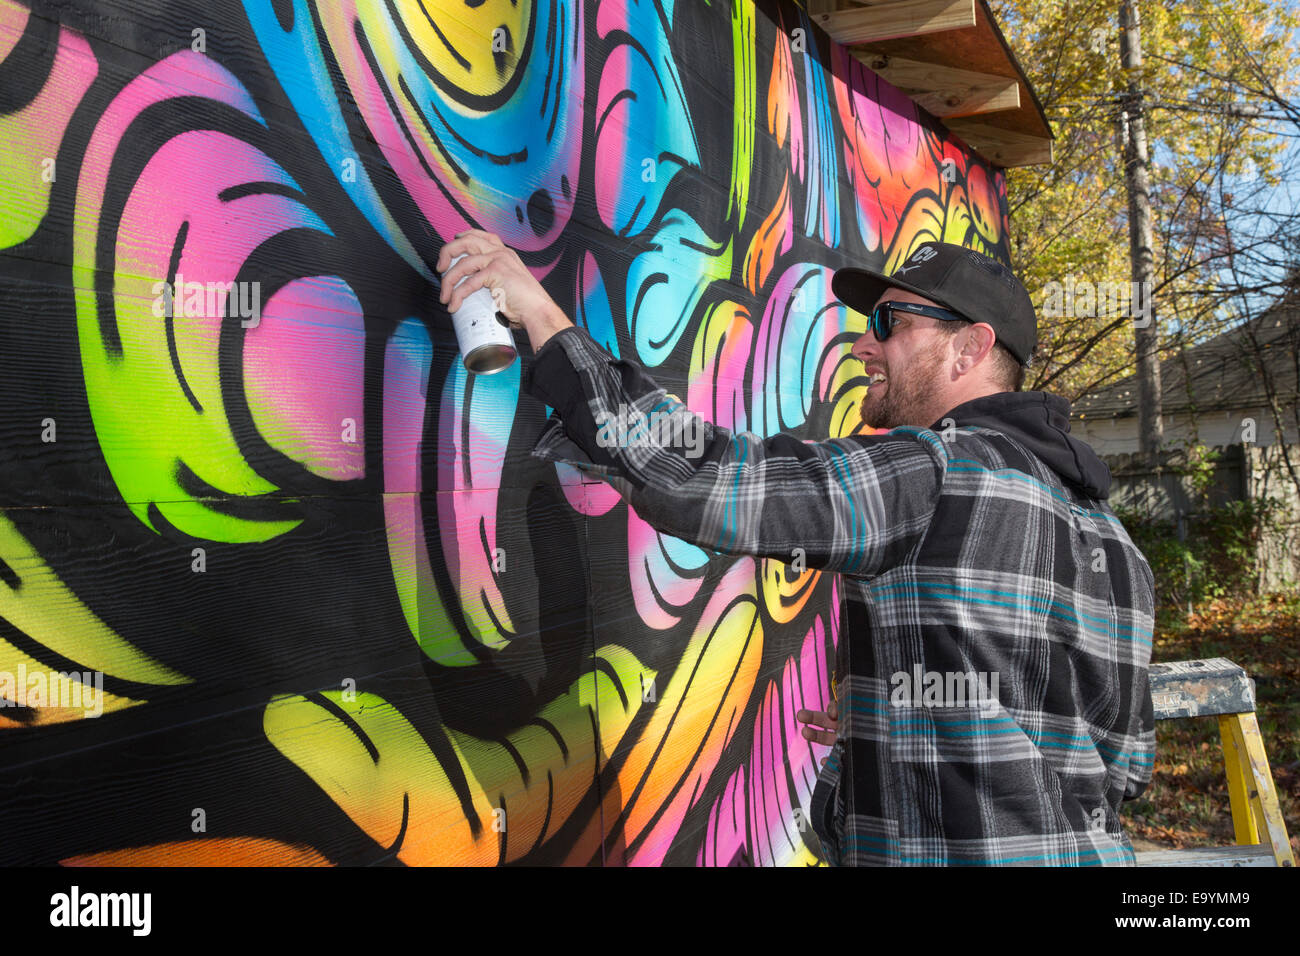 Detroit, Michigan - Street Künstler bei der Arbeit als Block club Baulücken in eine Nachbarschaft Park entwickelt. Stockfoto